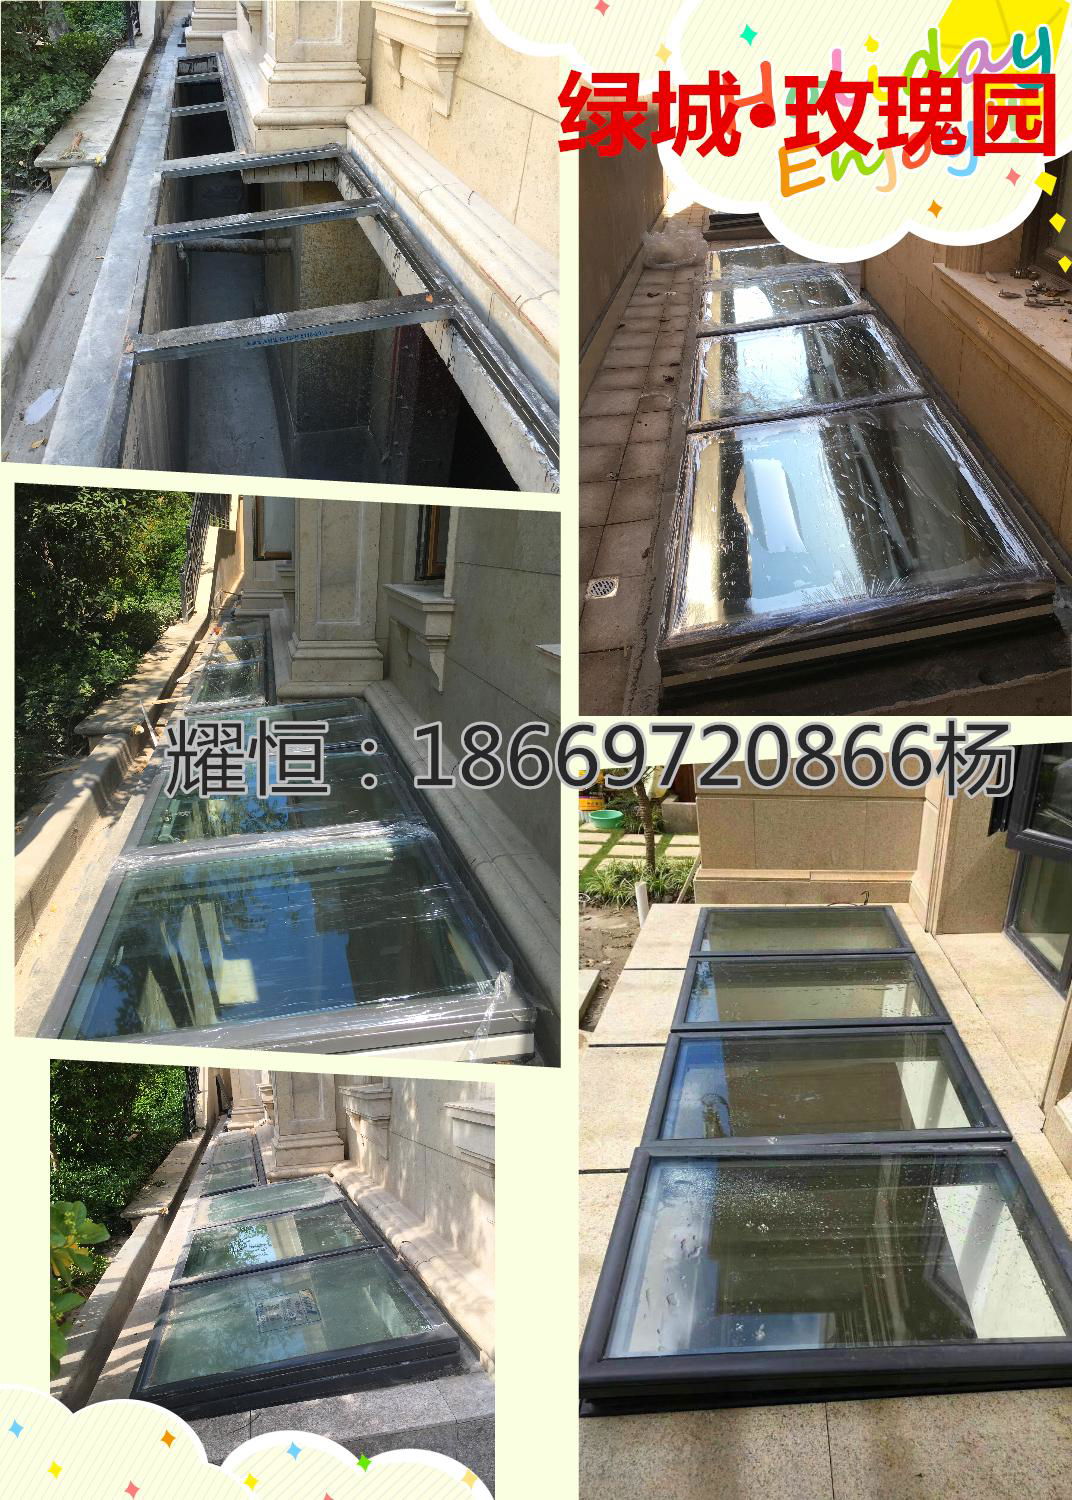 青島專業電動採光井窗設計施工安裝 2